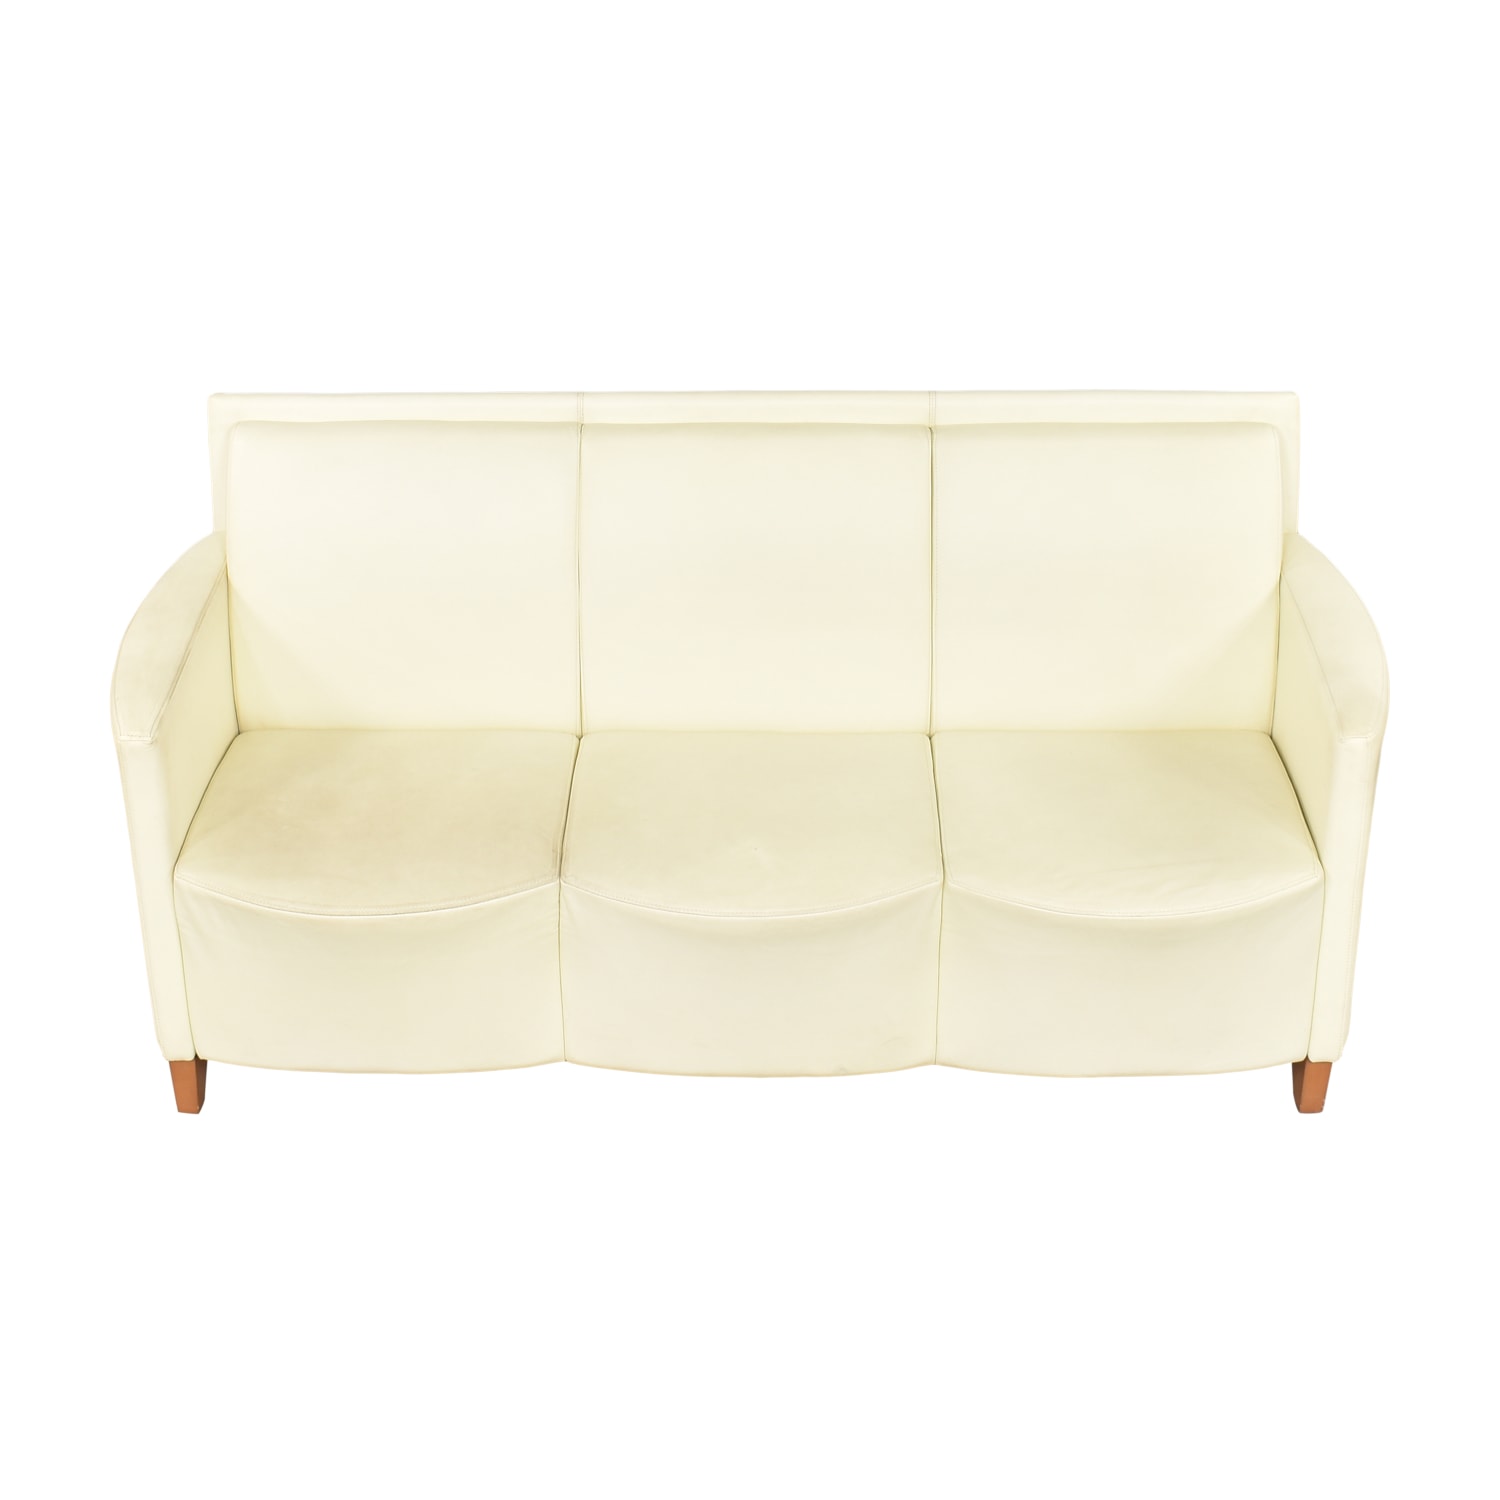 Krug Sofa (Light Gray Silver) - Used